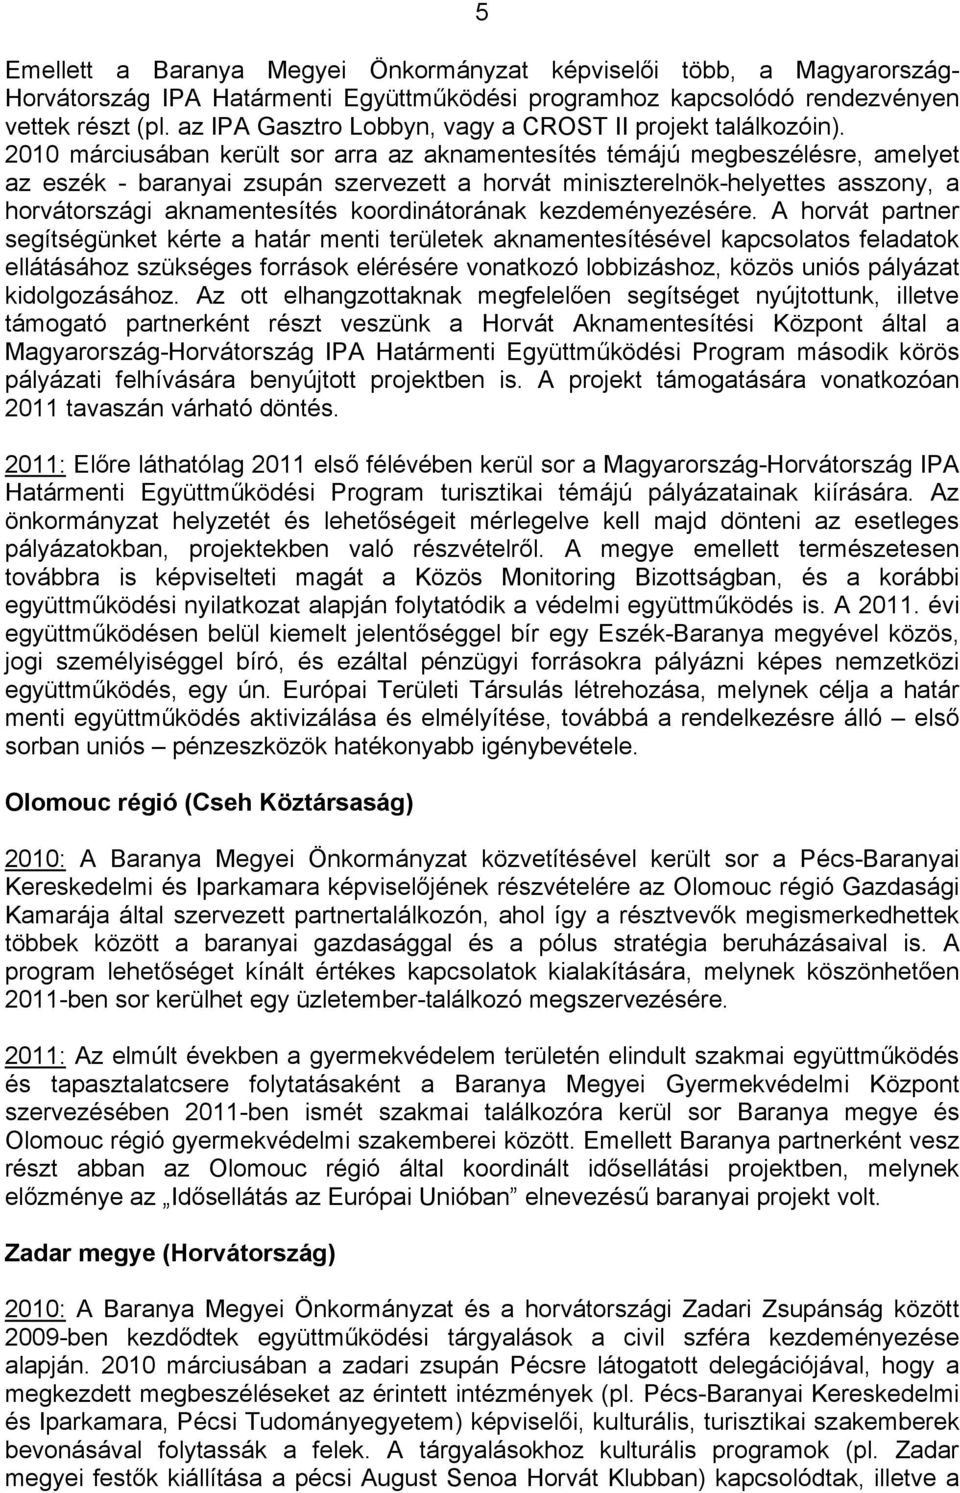 2010 márciusában került sor arra az aknamentesítés témájú megbeszélésre, amelyet az eszék - baranyai zsupán szervezett a horvát miniszterelnök-helyettes asszony, a horvátországi aknamentesítés